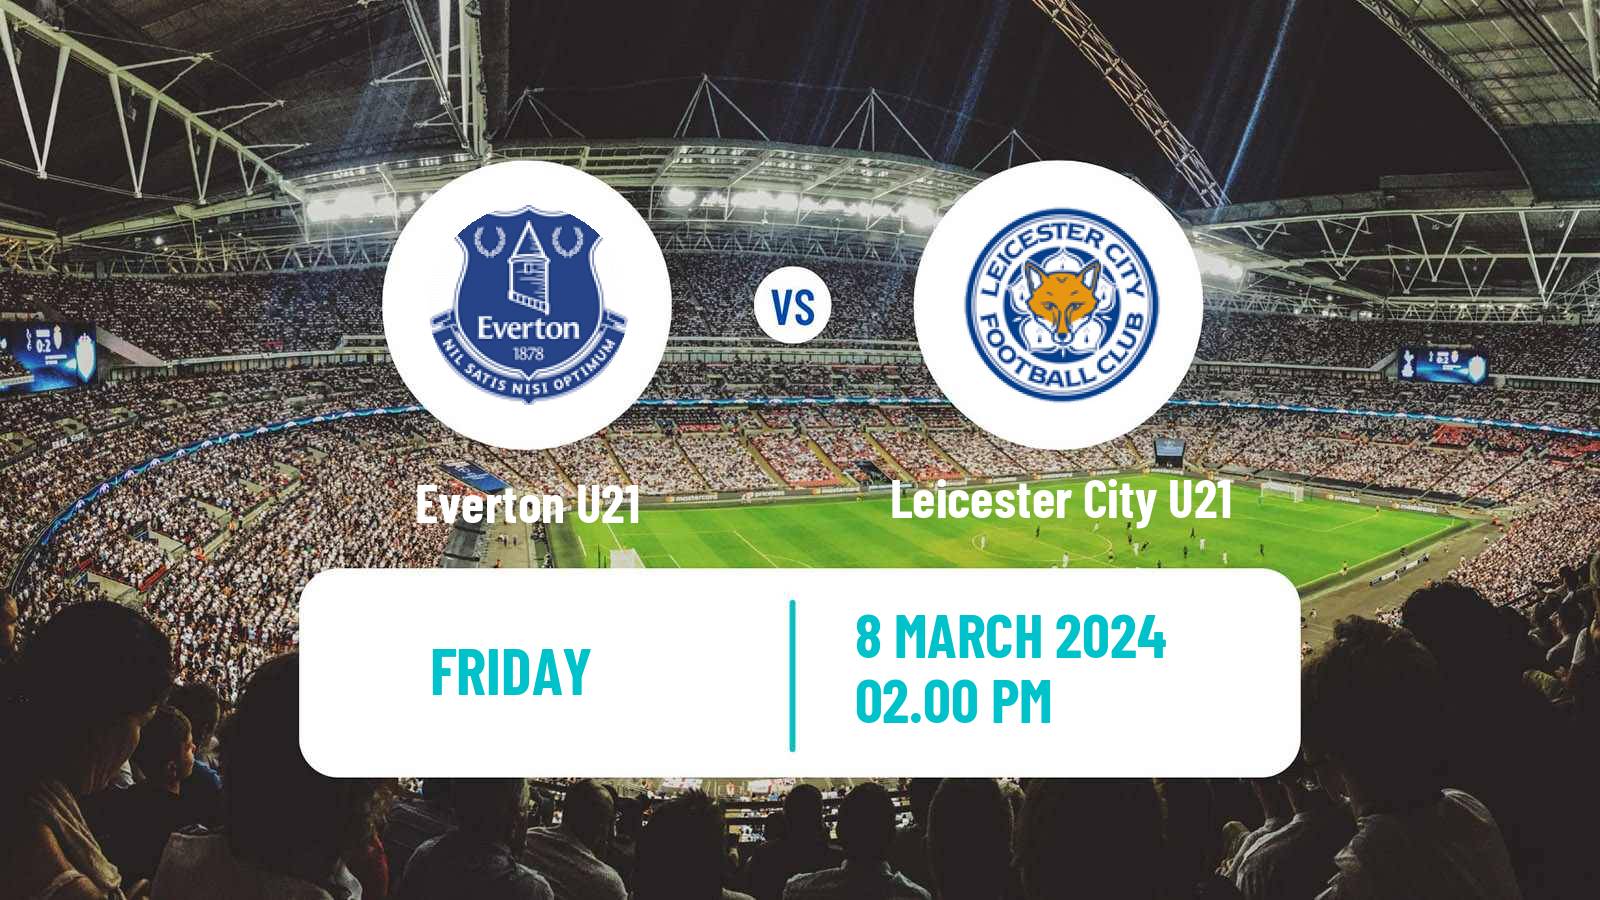 Soccer English Premier League 2 Everton U21 - Leicester City U21